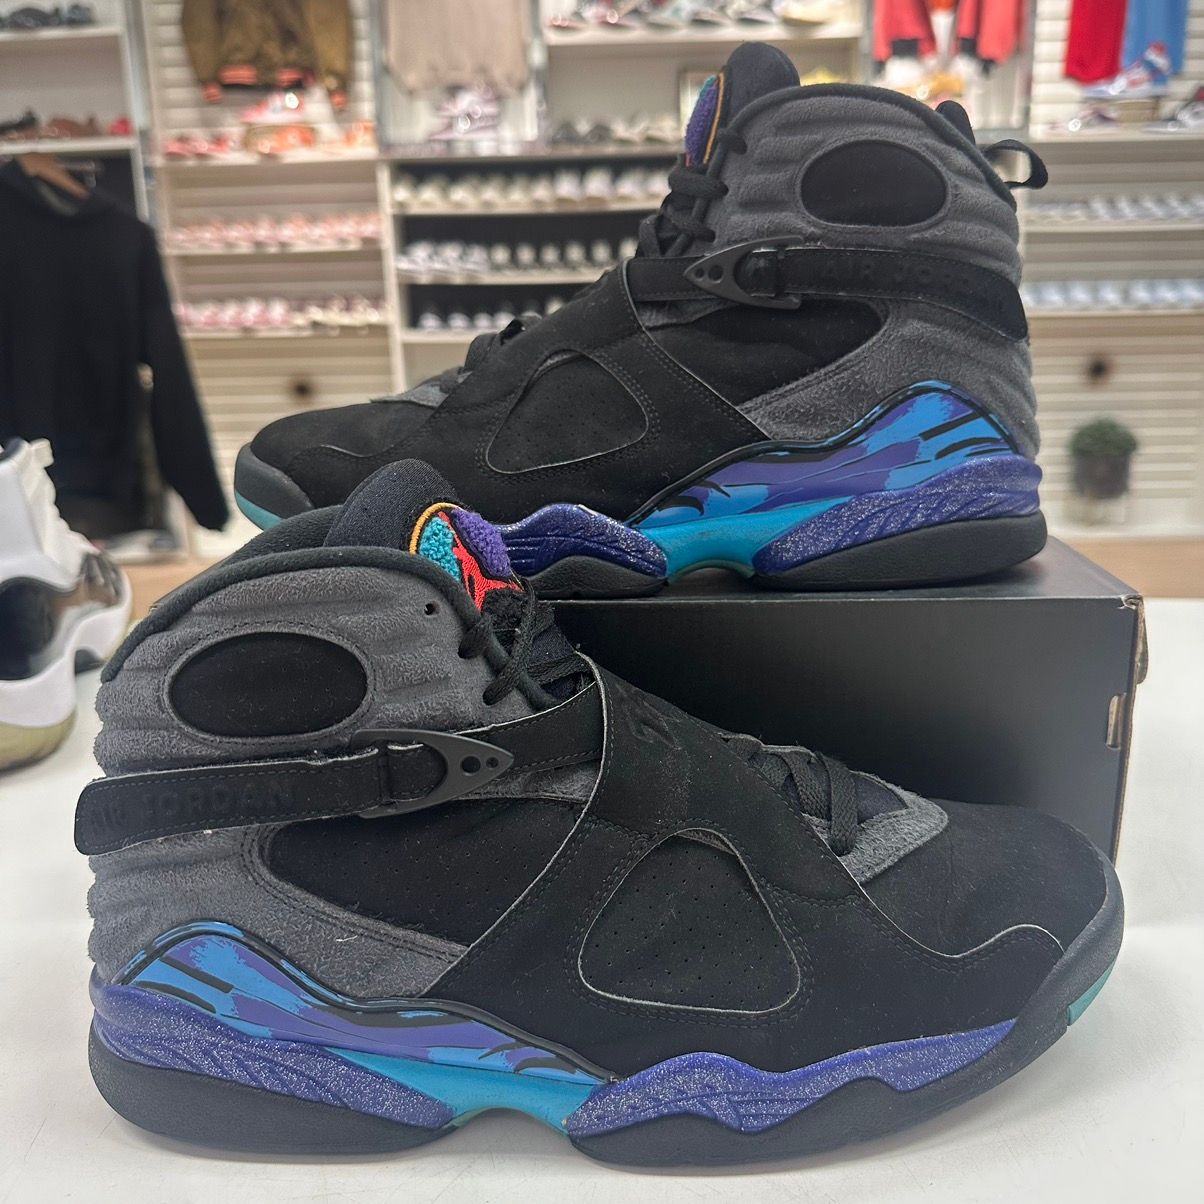 Pre-owned Jordan Brand Size 11.5 - Jordan 8 Retro Aqua 2015 - Sneakers In Black Blue